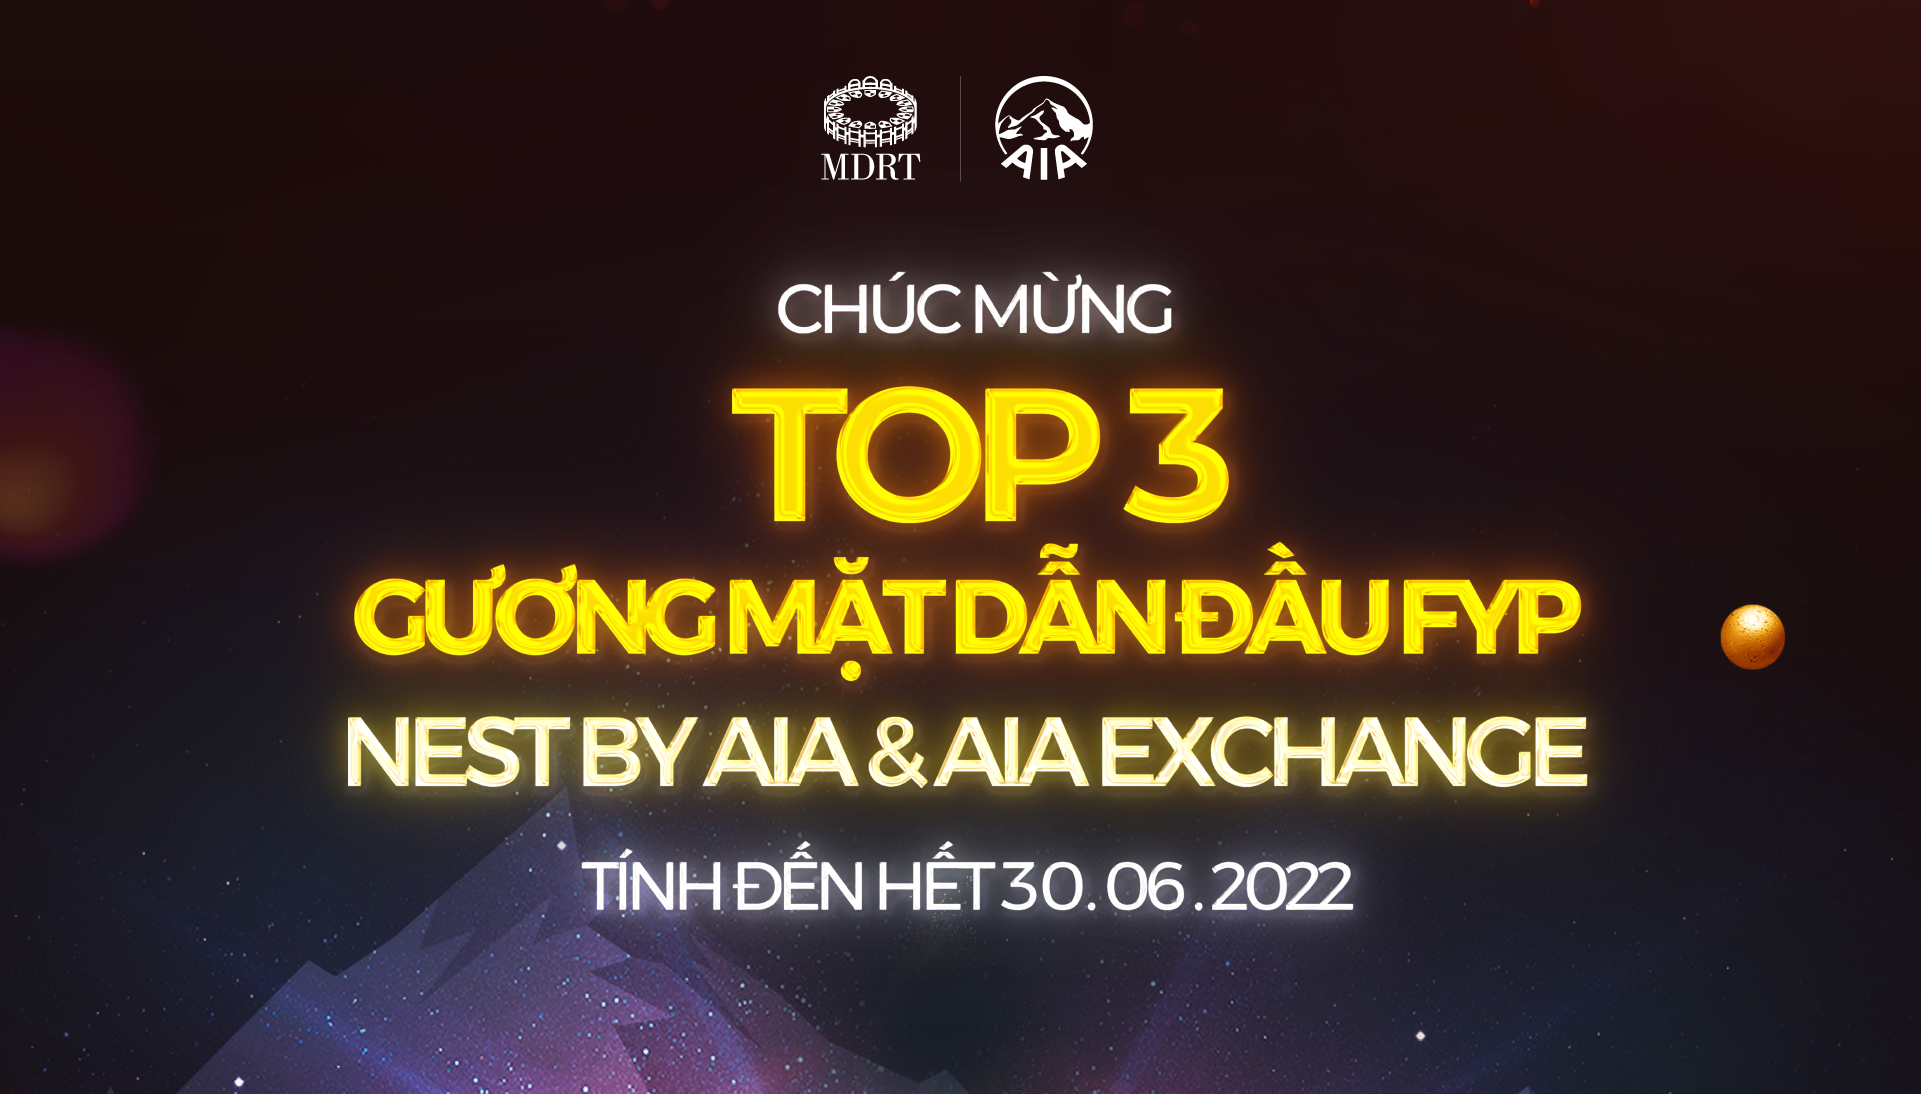 CHÚC MỪNG TOP 3 GƯƠNG MẶT DẪN ĐẦU FYP THÁNG 06.2022 KÊNH NEST & EXCHANGE